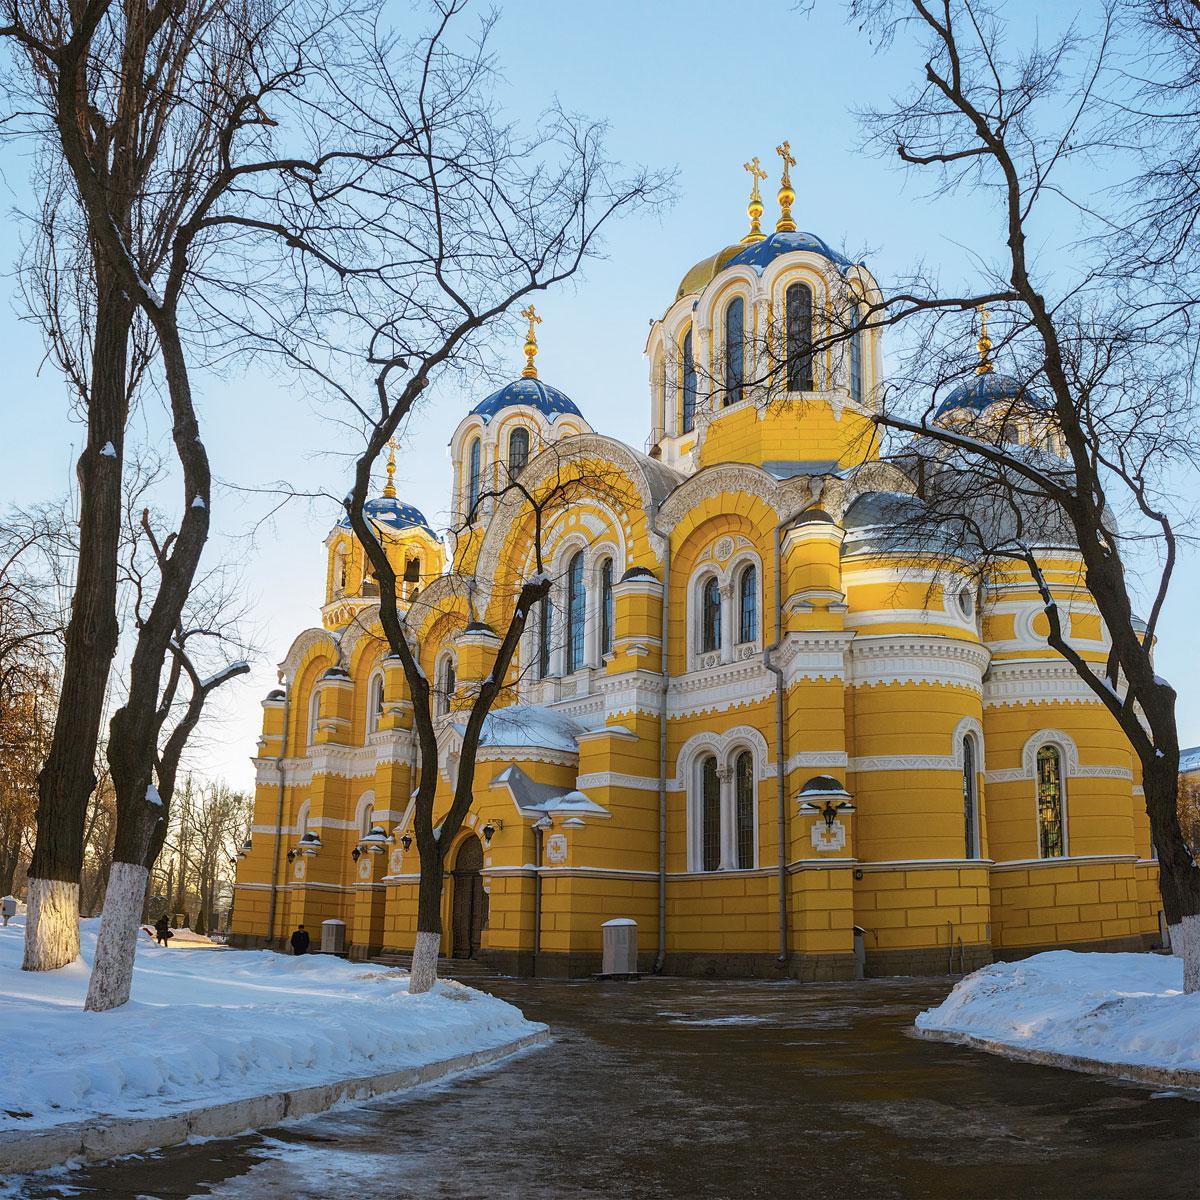 La cathédrale Saint-Vladimir à Kiev, siège de l’Eglise orthodoxe ukrainienne.